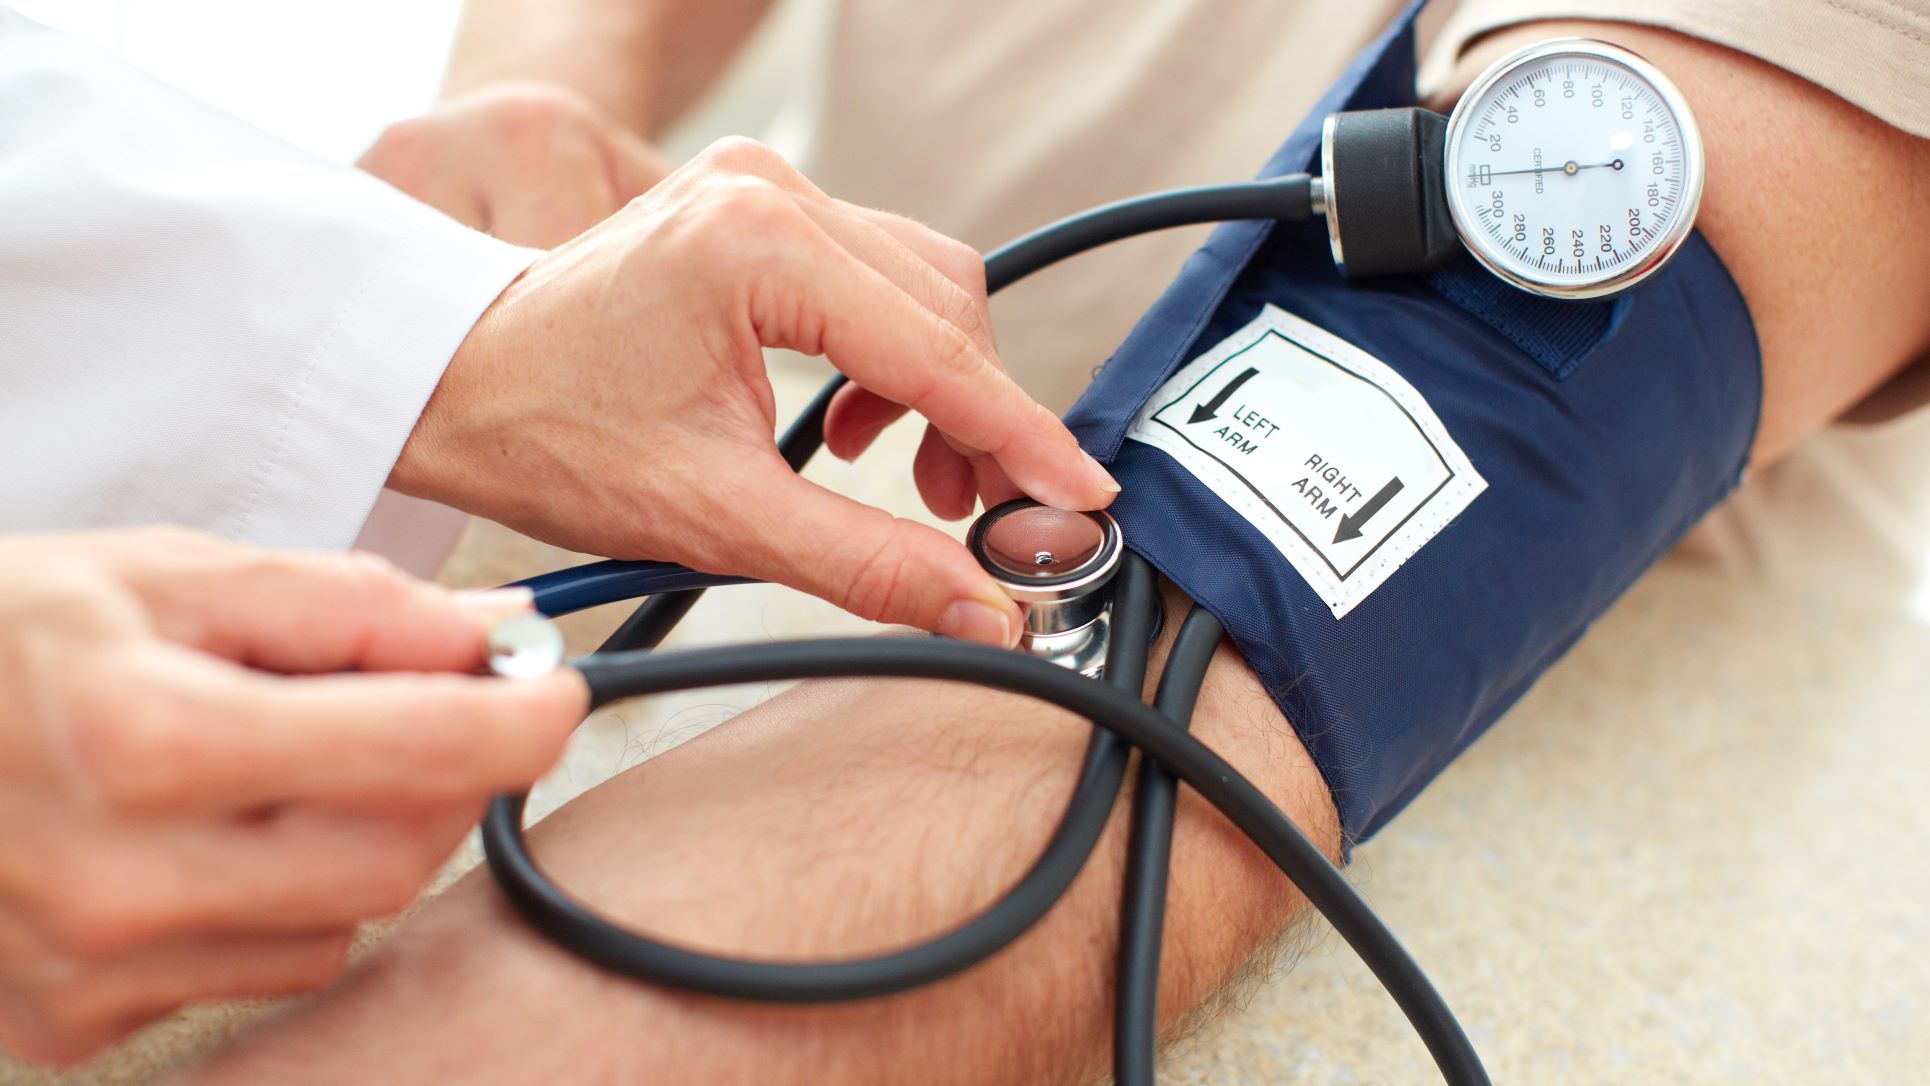 Những người thuộc nhóm đối tượng cao nguy cơ mắc các bệnh liên quan đến huyết áp cao hoặc thấp là ai?
